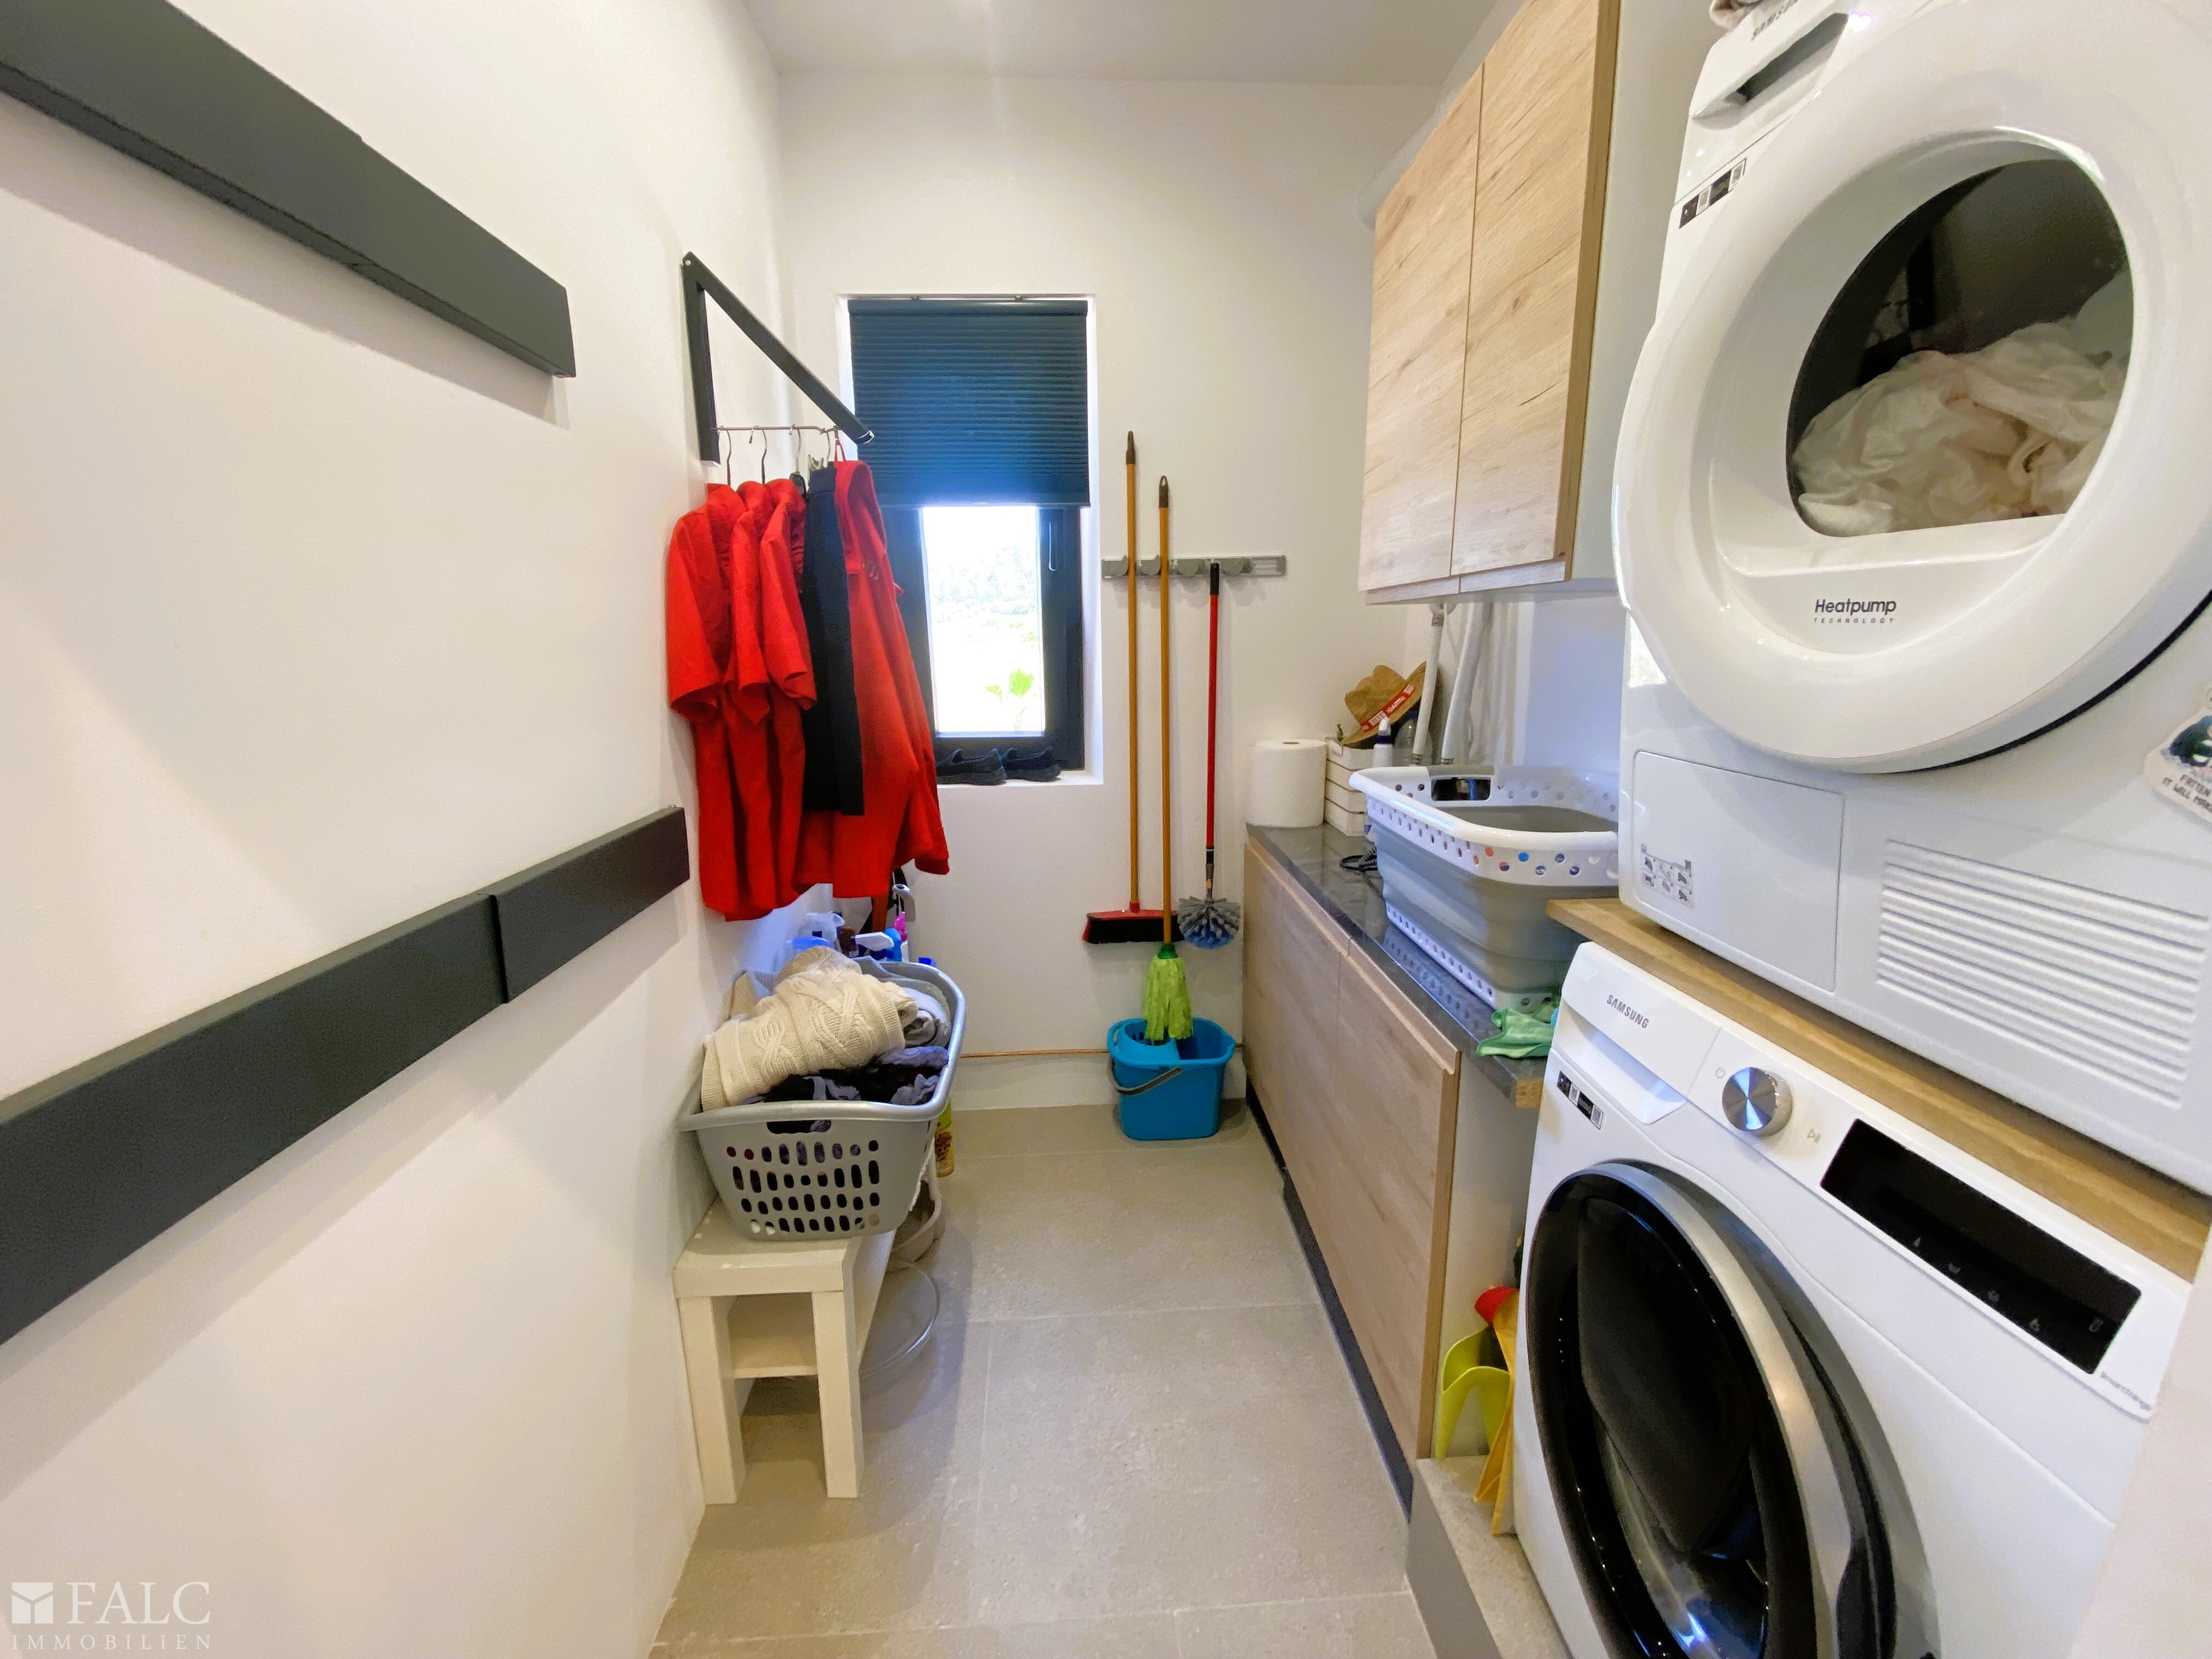 Waschküche - Utility room